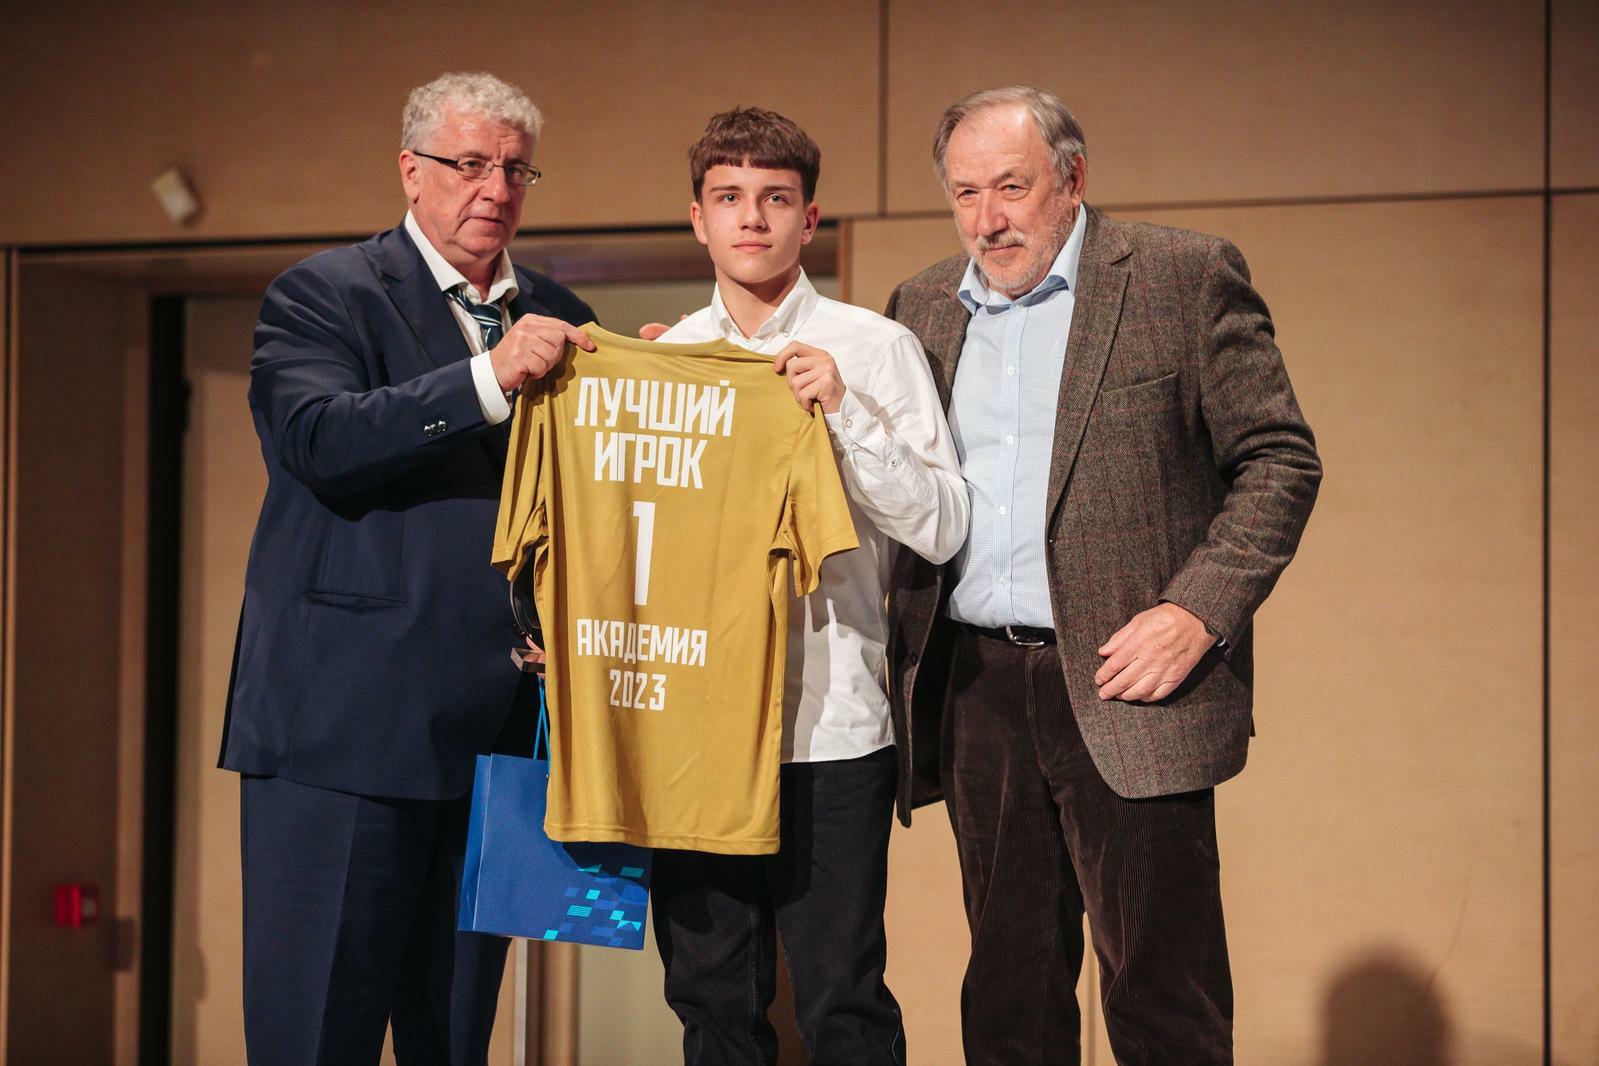 Noticias del FC "Dynamo" Moscú | ¡Nikolai Gontar cumple 75 años! Sitio oficial del club Dynamo.